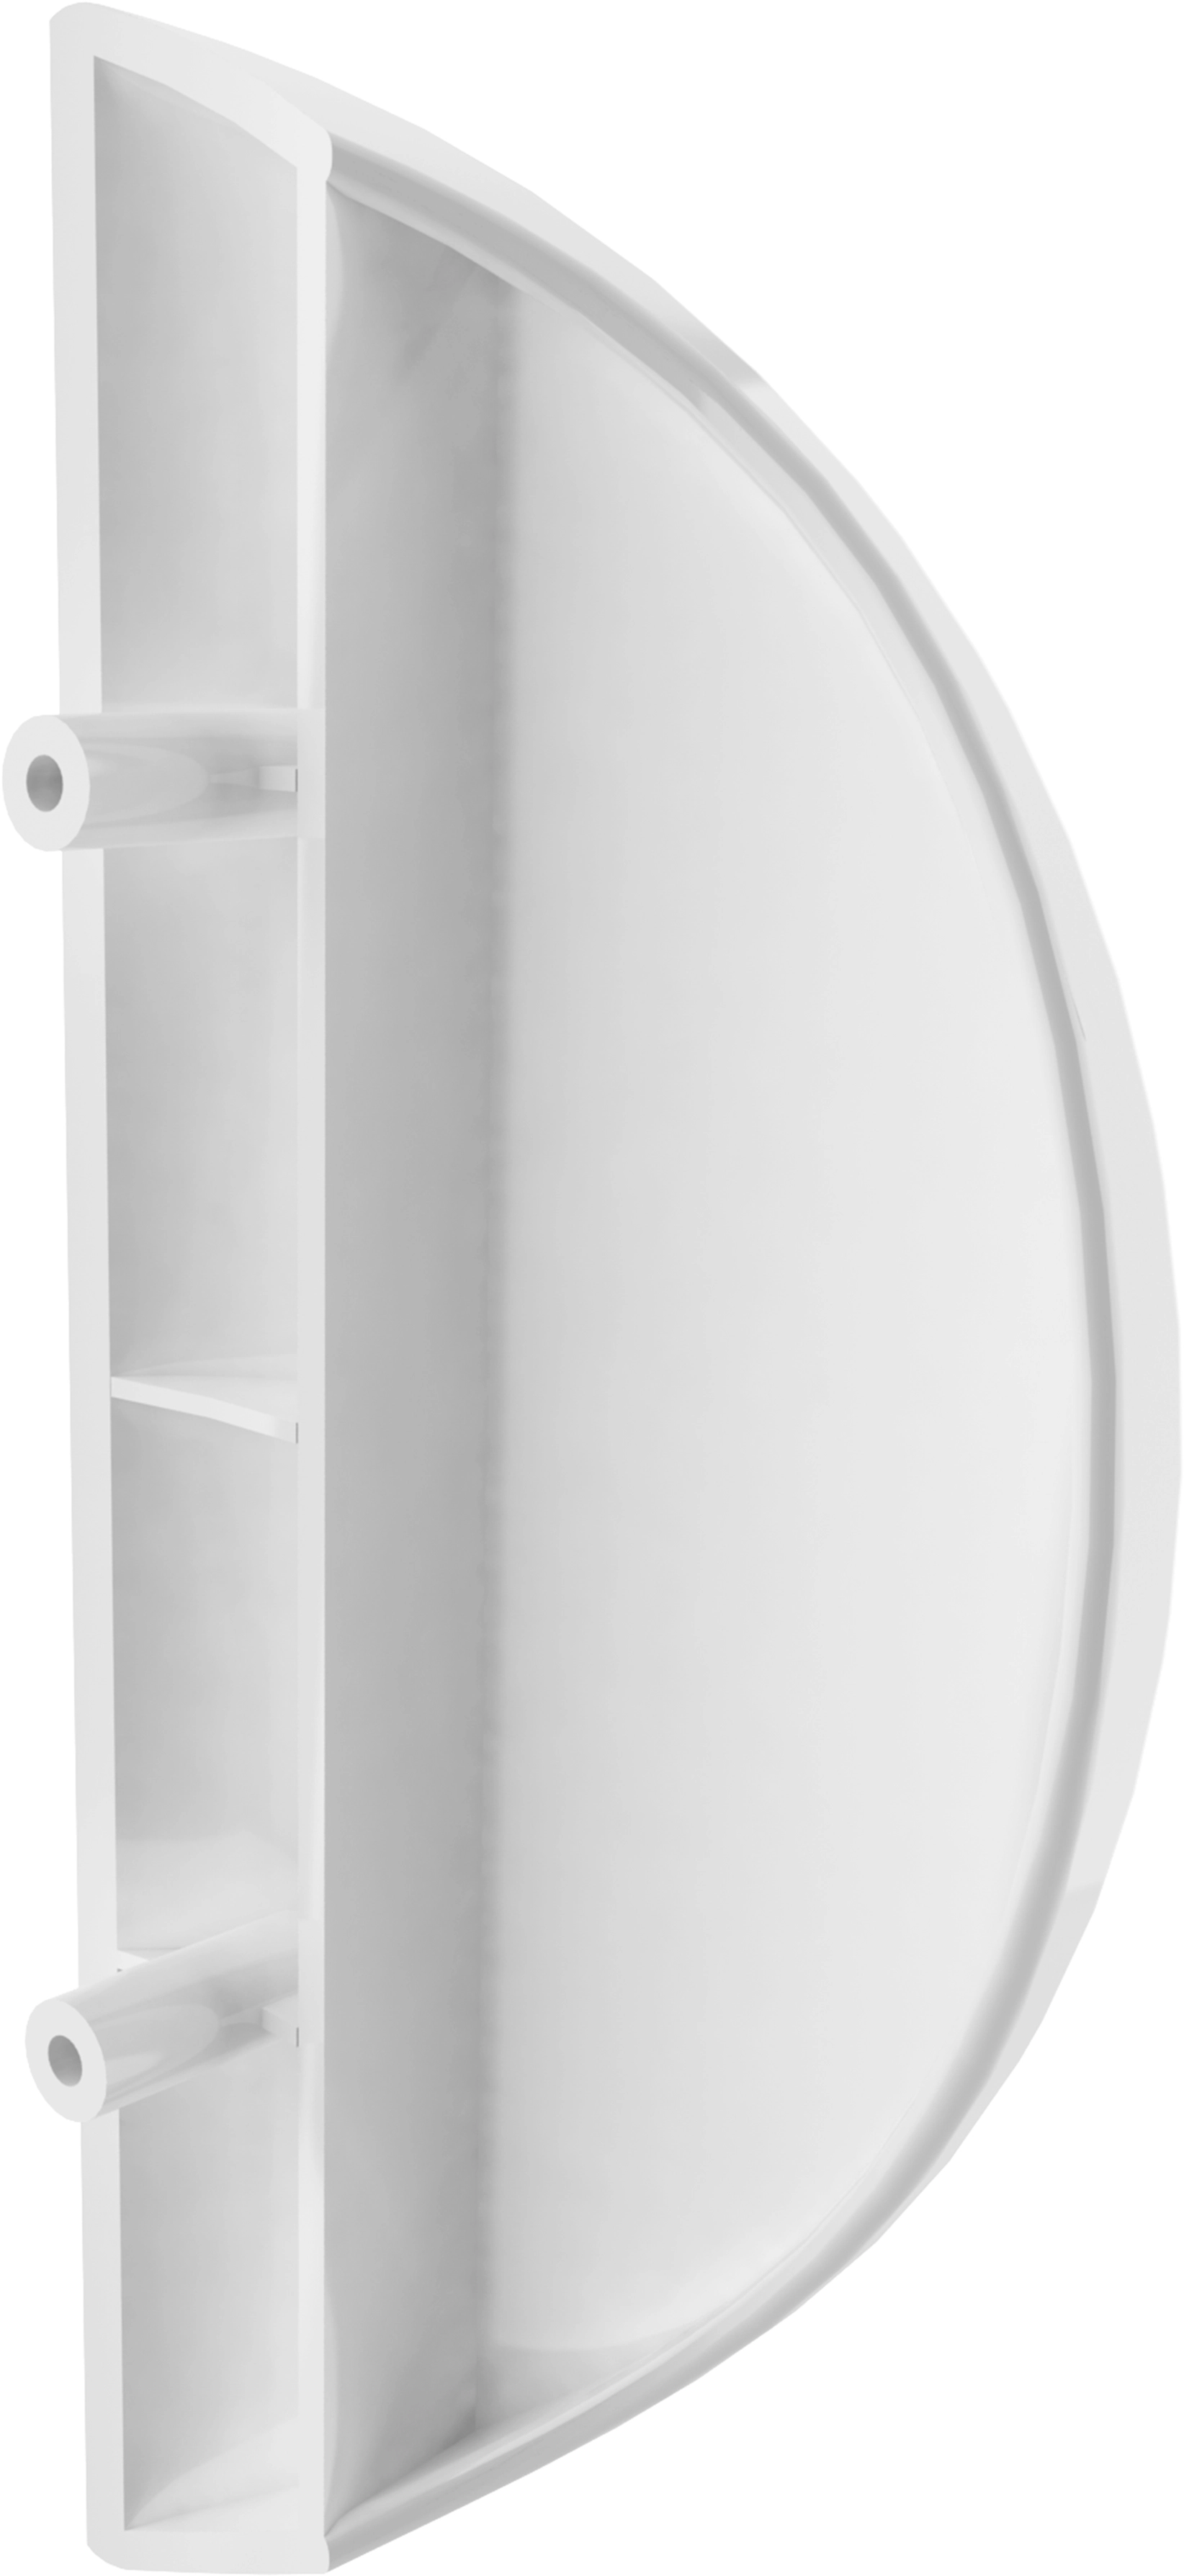 Schulte Drehtür Logo Echtglas Weiß 80 cm x 180 cm kaufen bei OBI